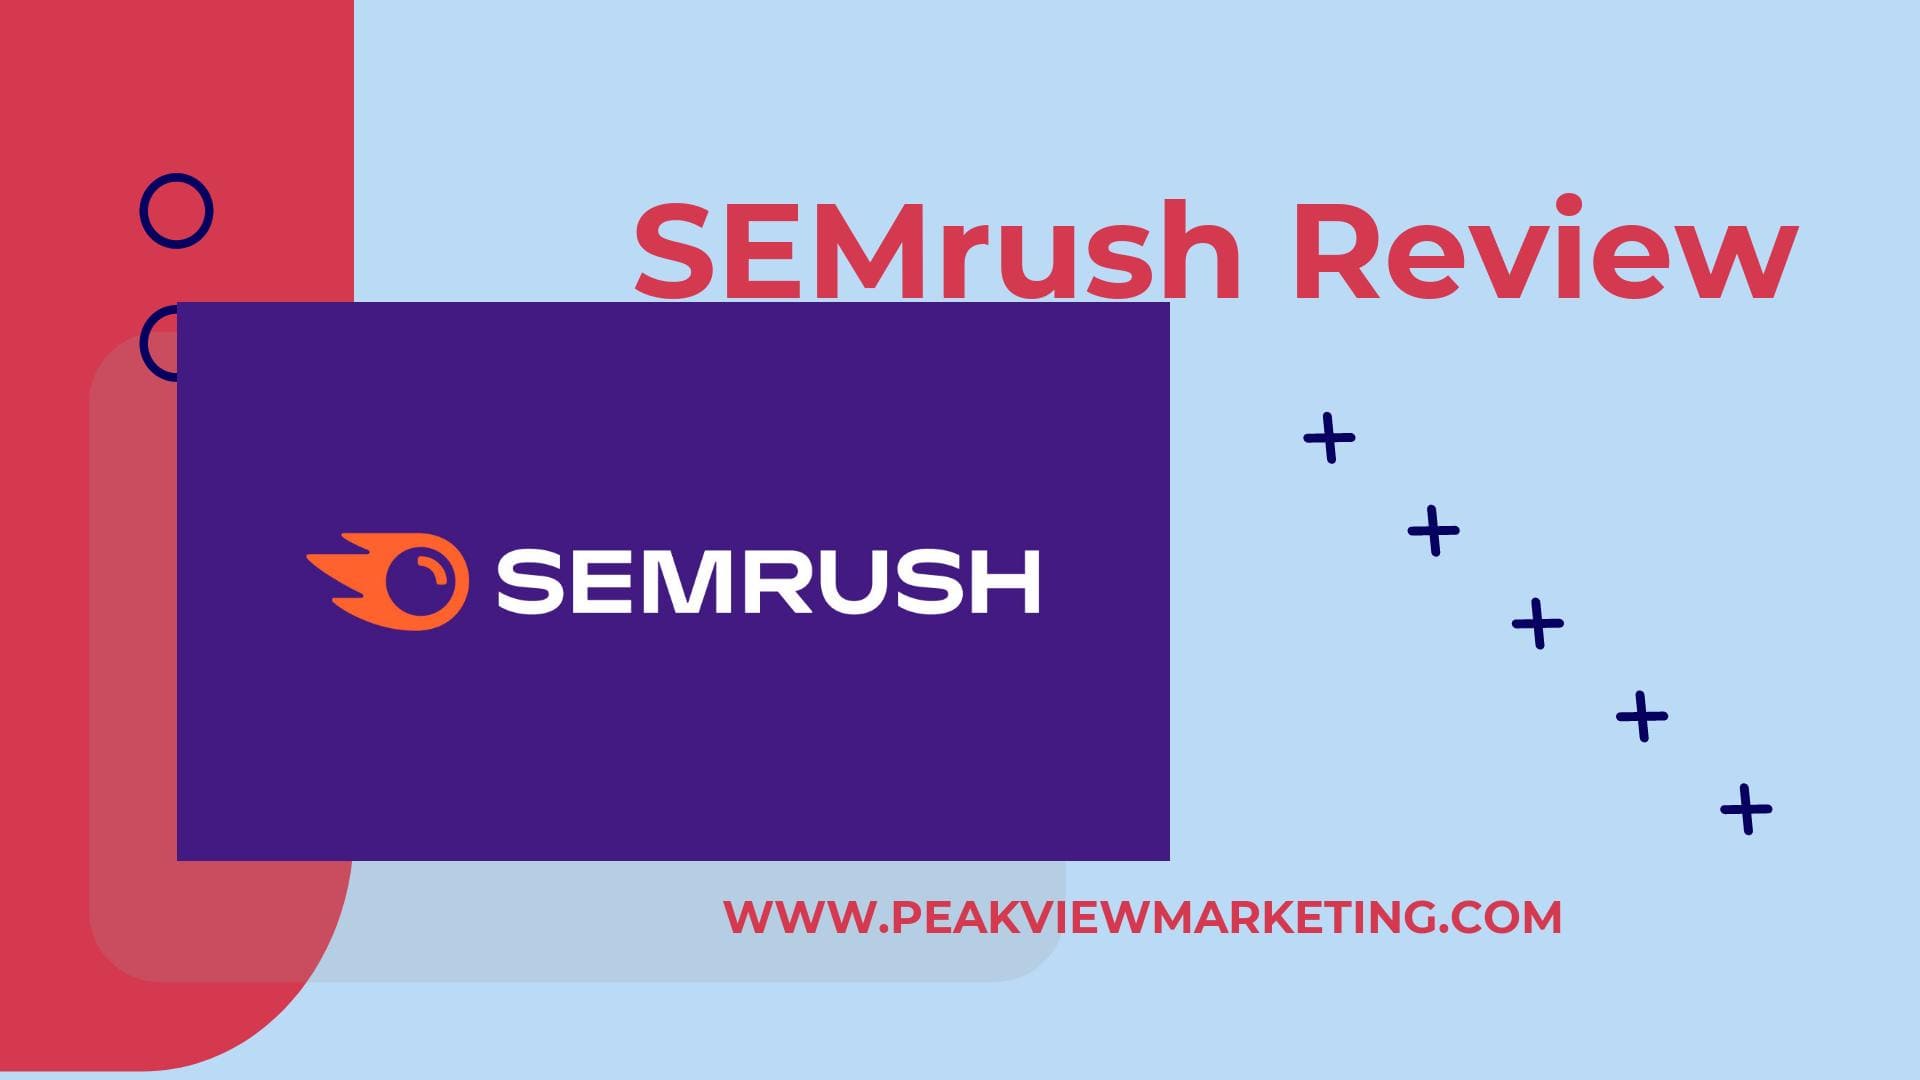 SEMrush Review Image